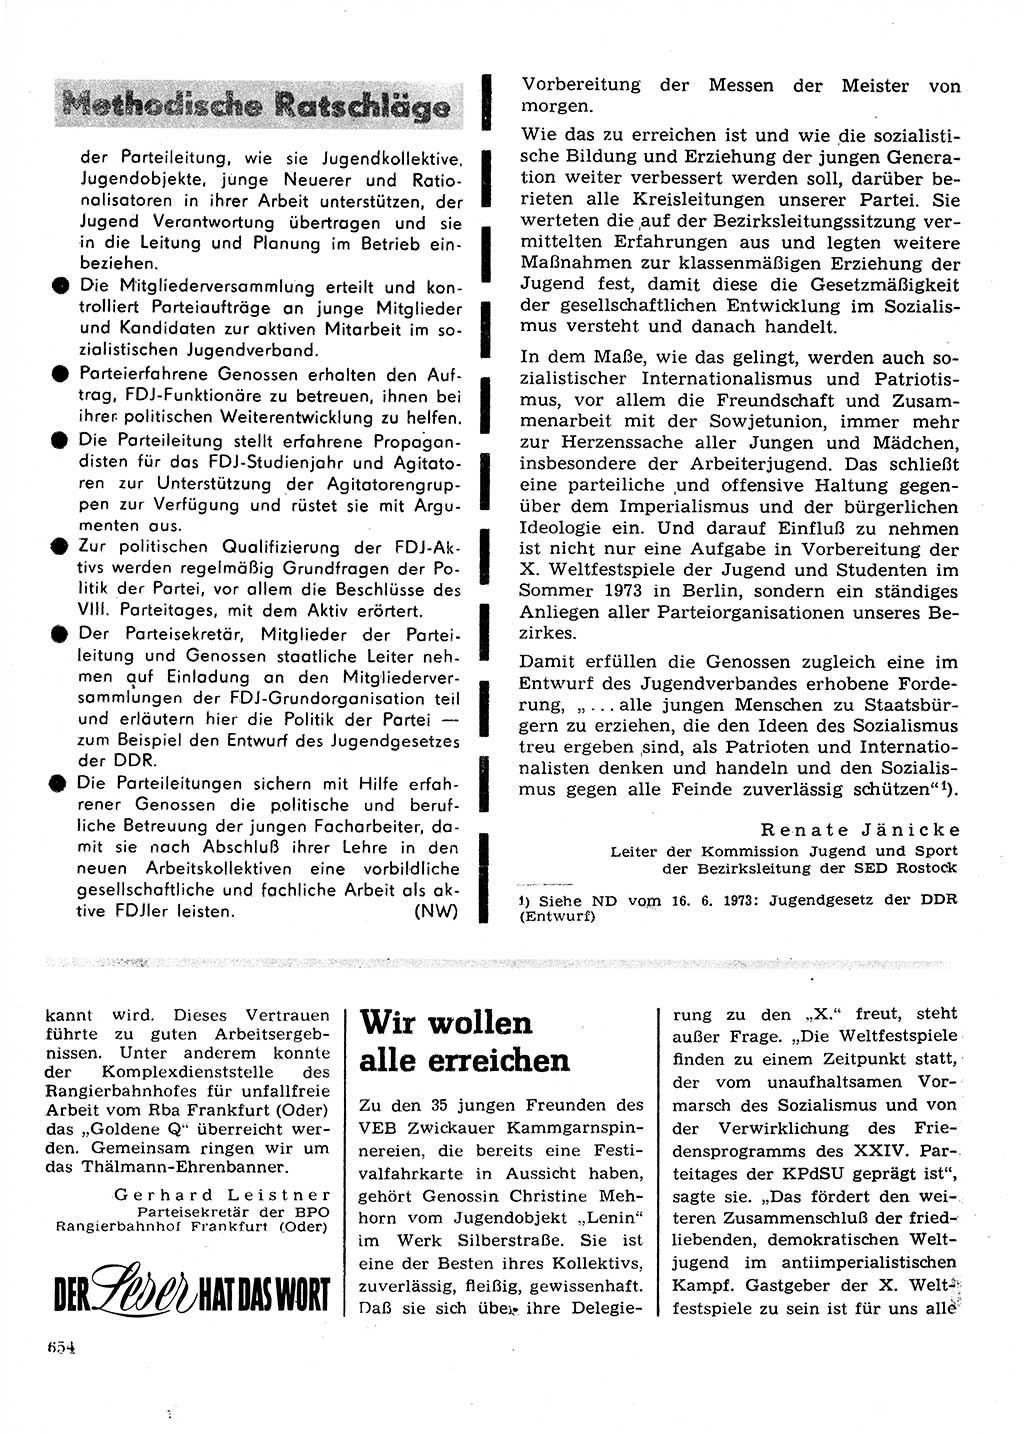 Neuer Weg (NW), Organ des Zentralkomitees (ZK) der SED (Sozialistische Einheitspartei Deutschlands) für Fragen des Parteilebens, 28. Jahrgang [Deutsche Demokratische Republik (DDR)] 1973, Seite 654 (NW ZK SED DDR 1973, S. 654)